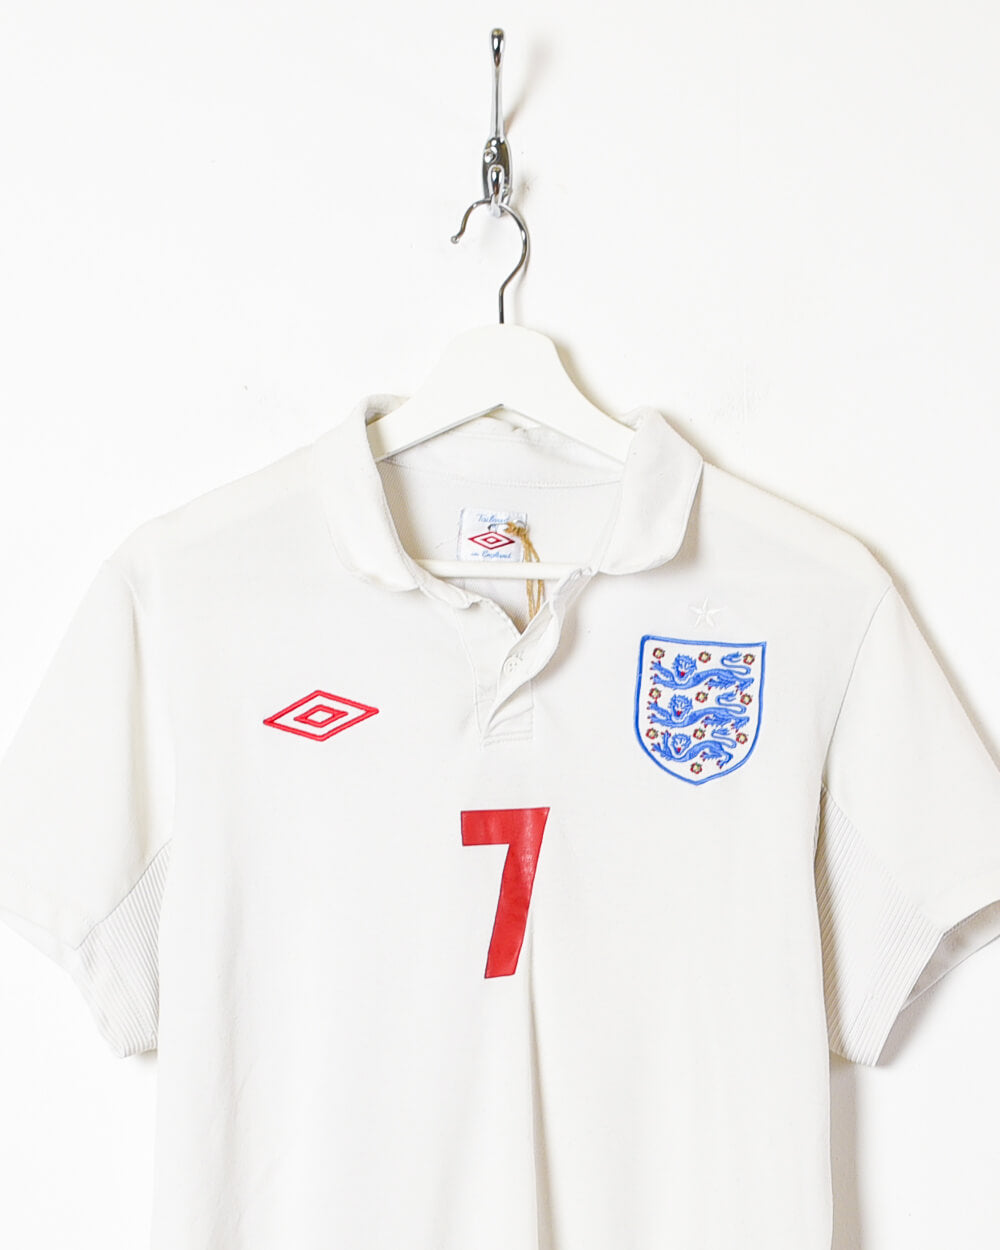 White Umbro England 2009/10 Beckham Home Football Shirt - Small